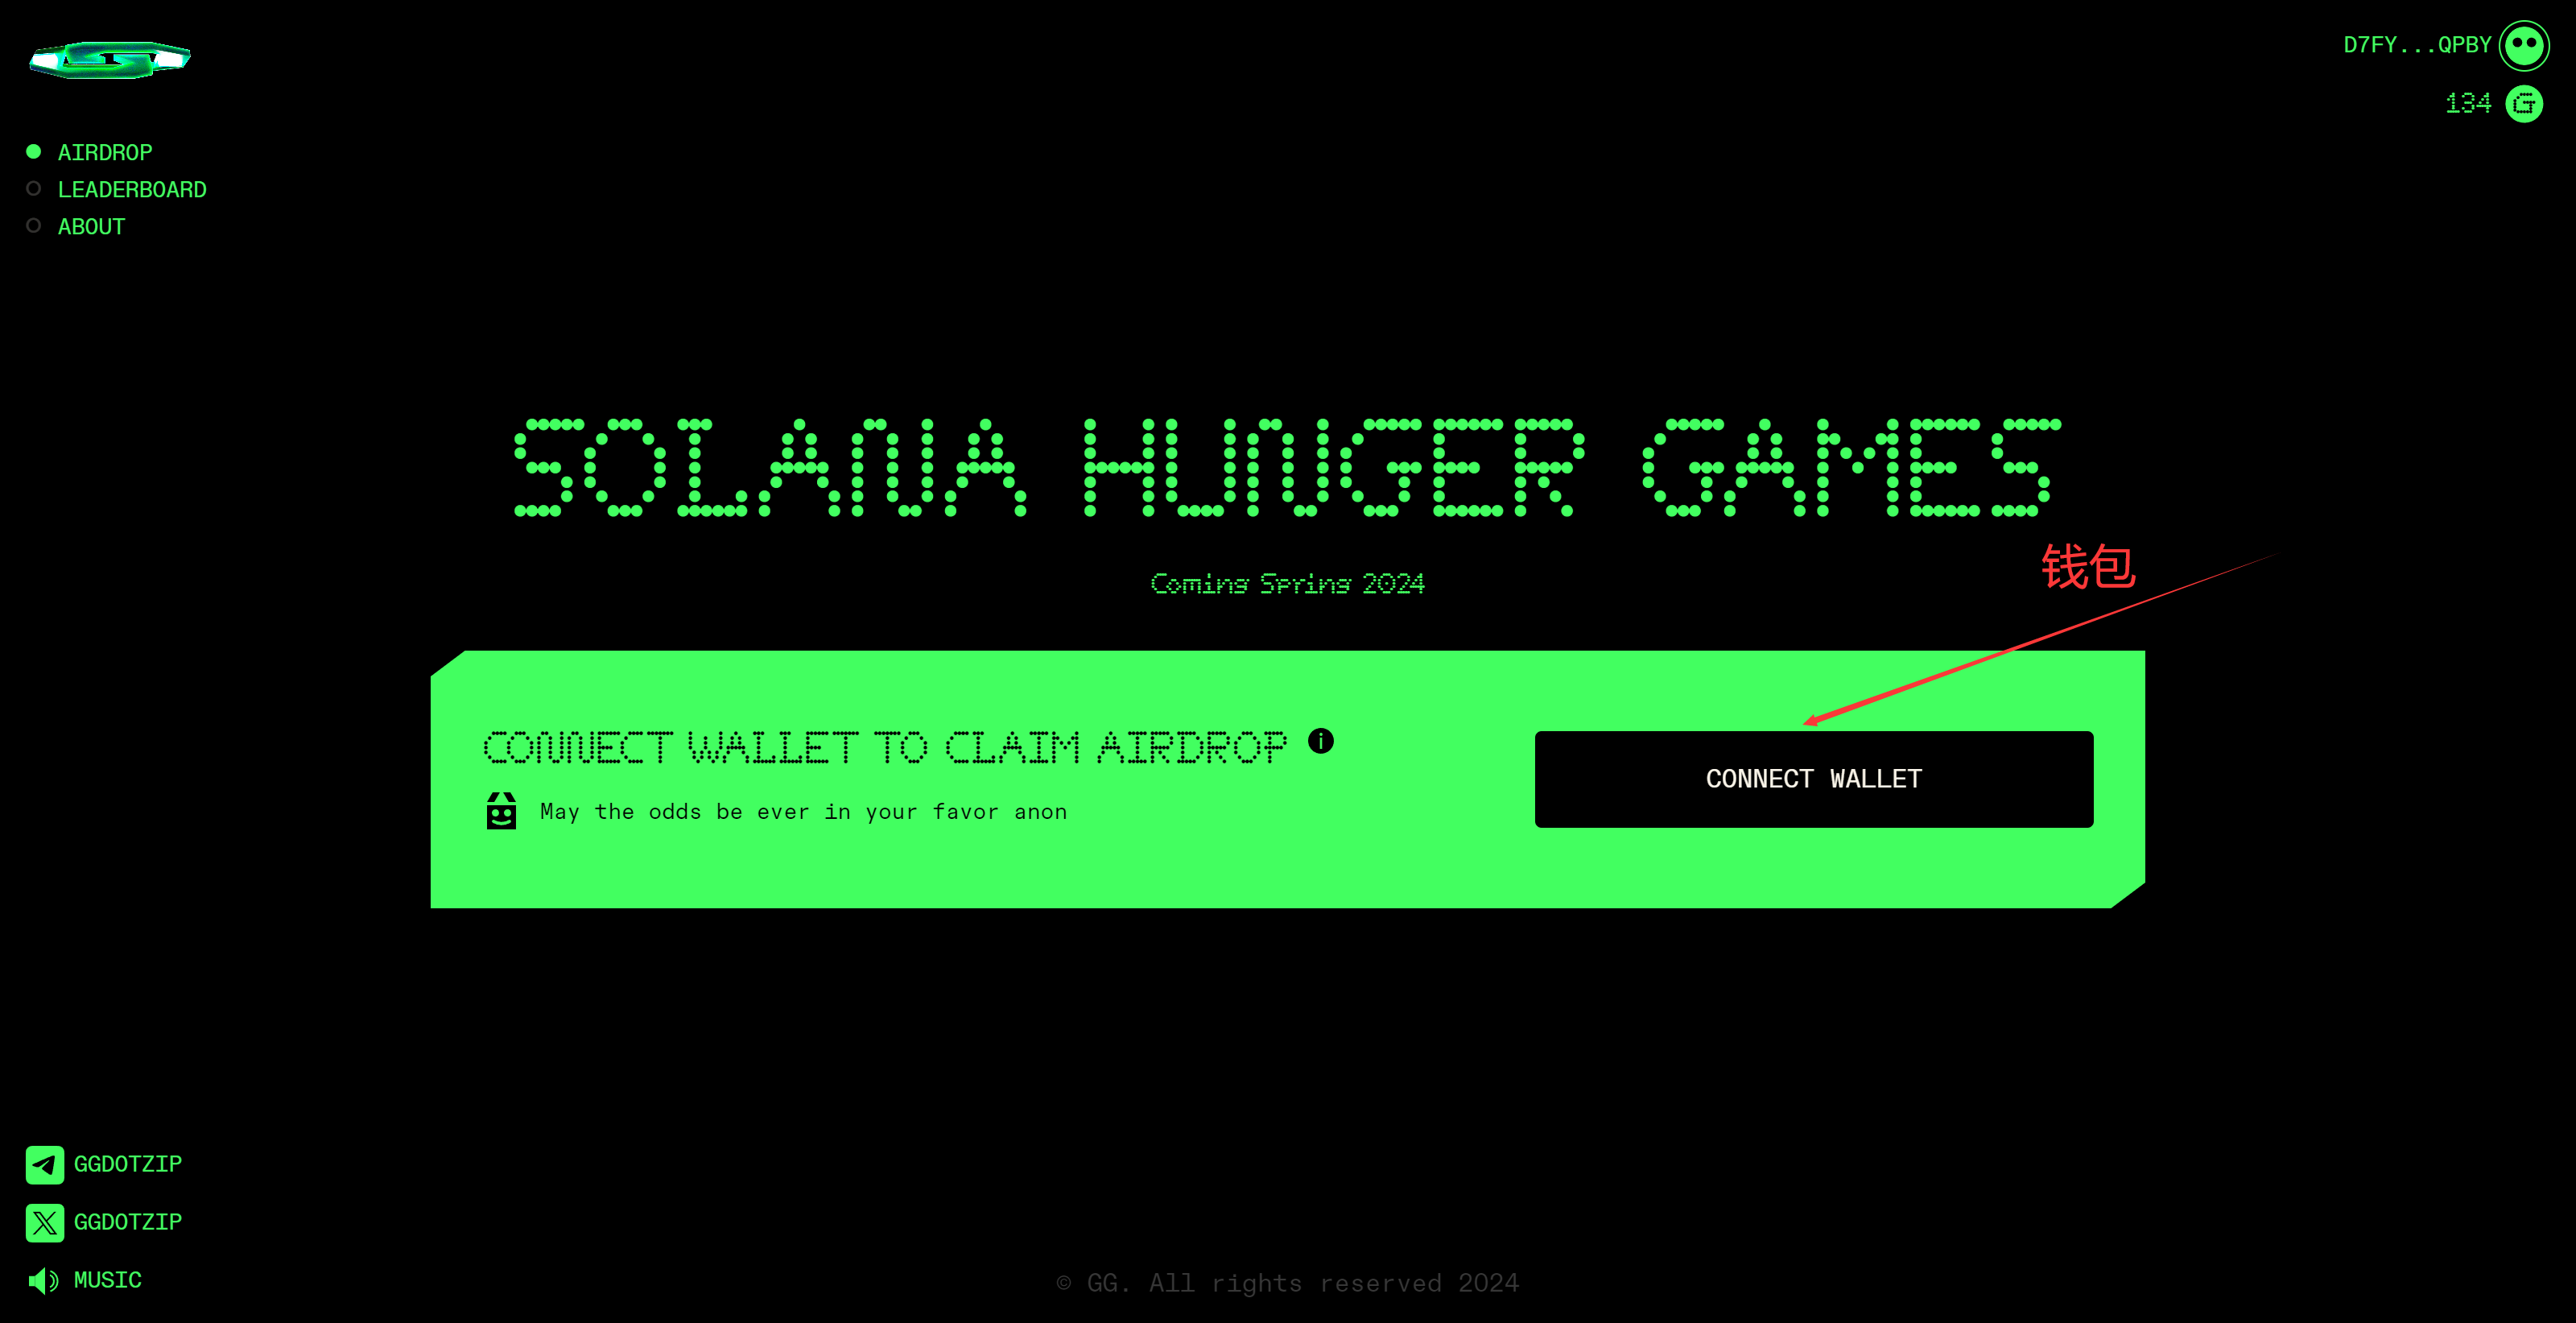 较早期的空投项目 GG: Solana Hunger Games，目前参与人数以及热度都非常高